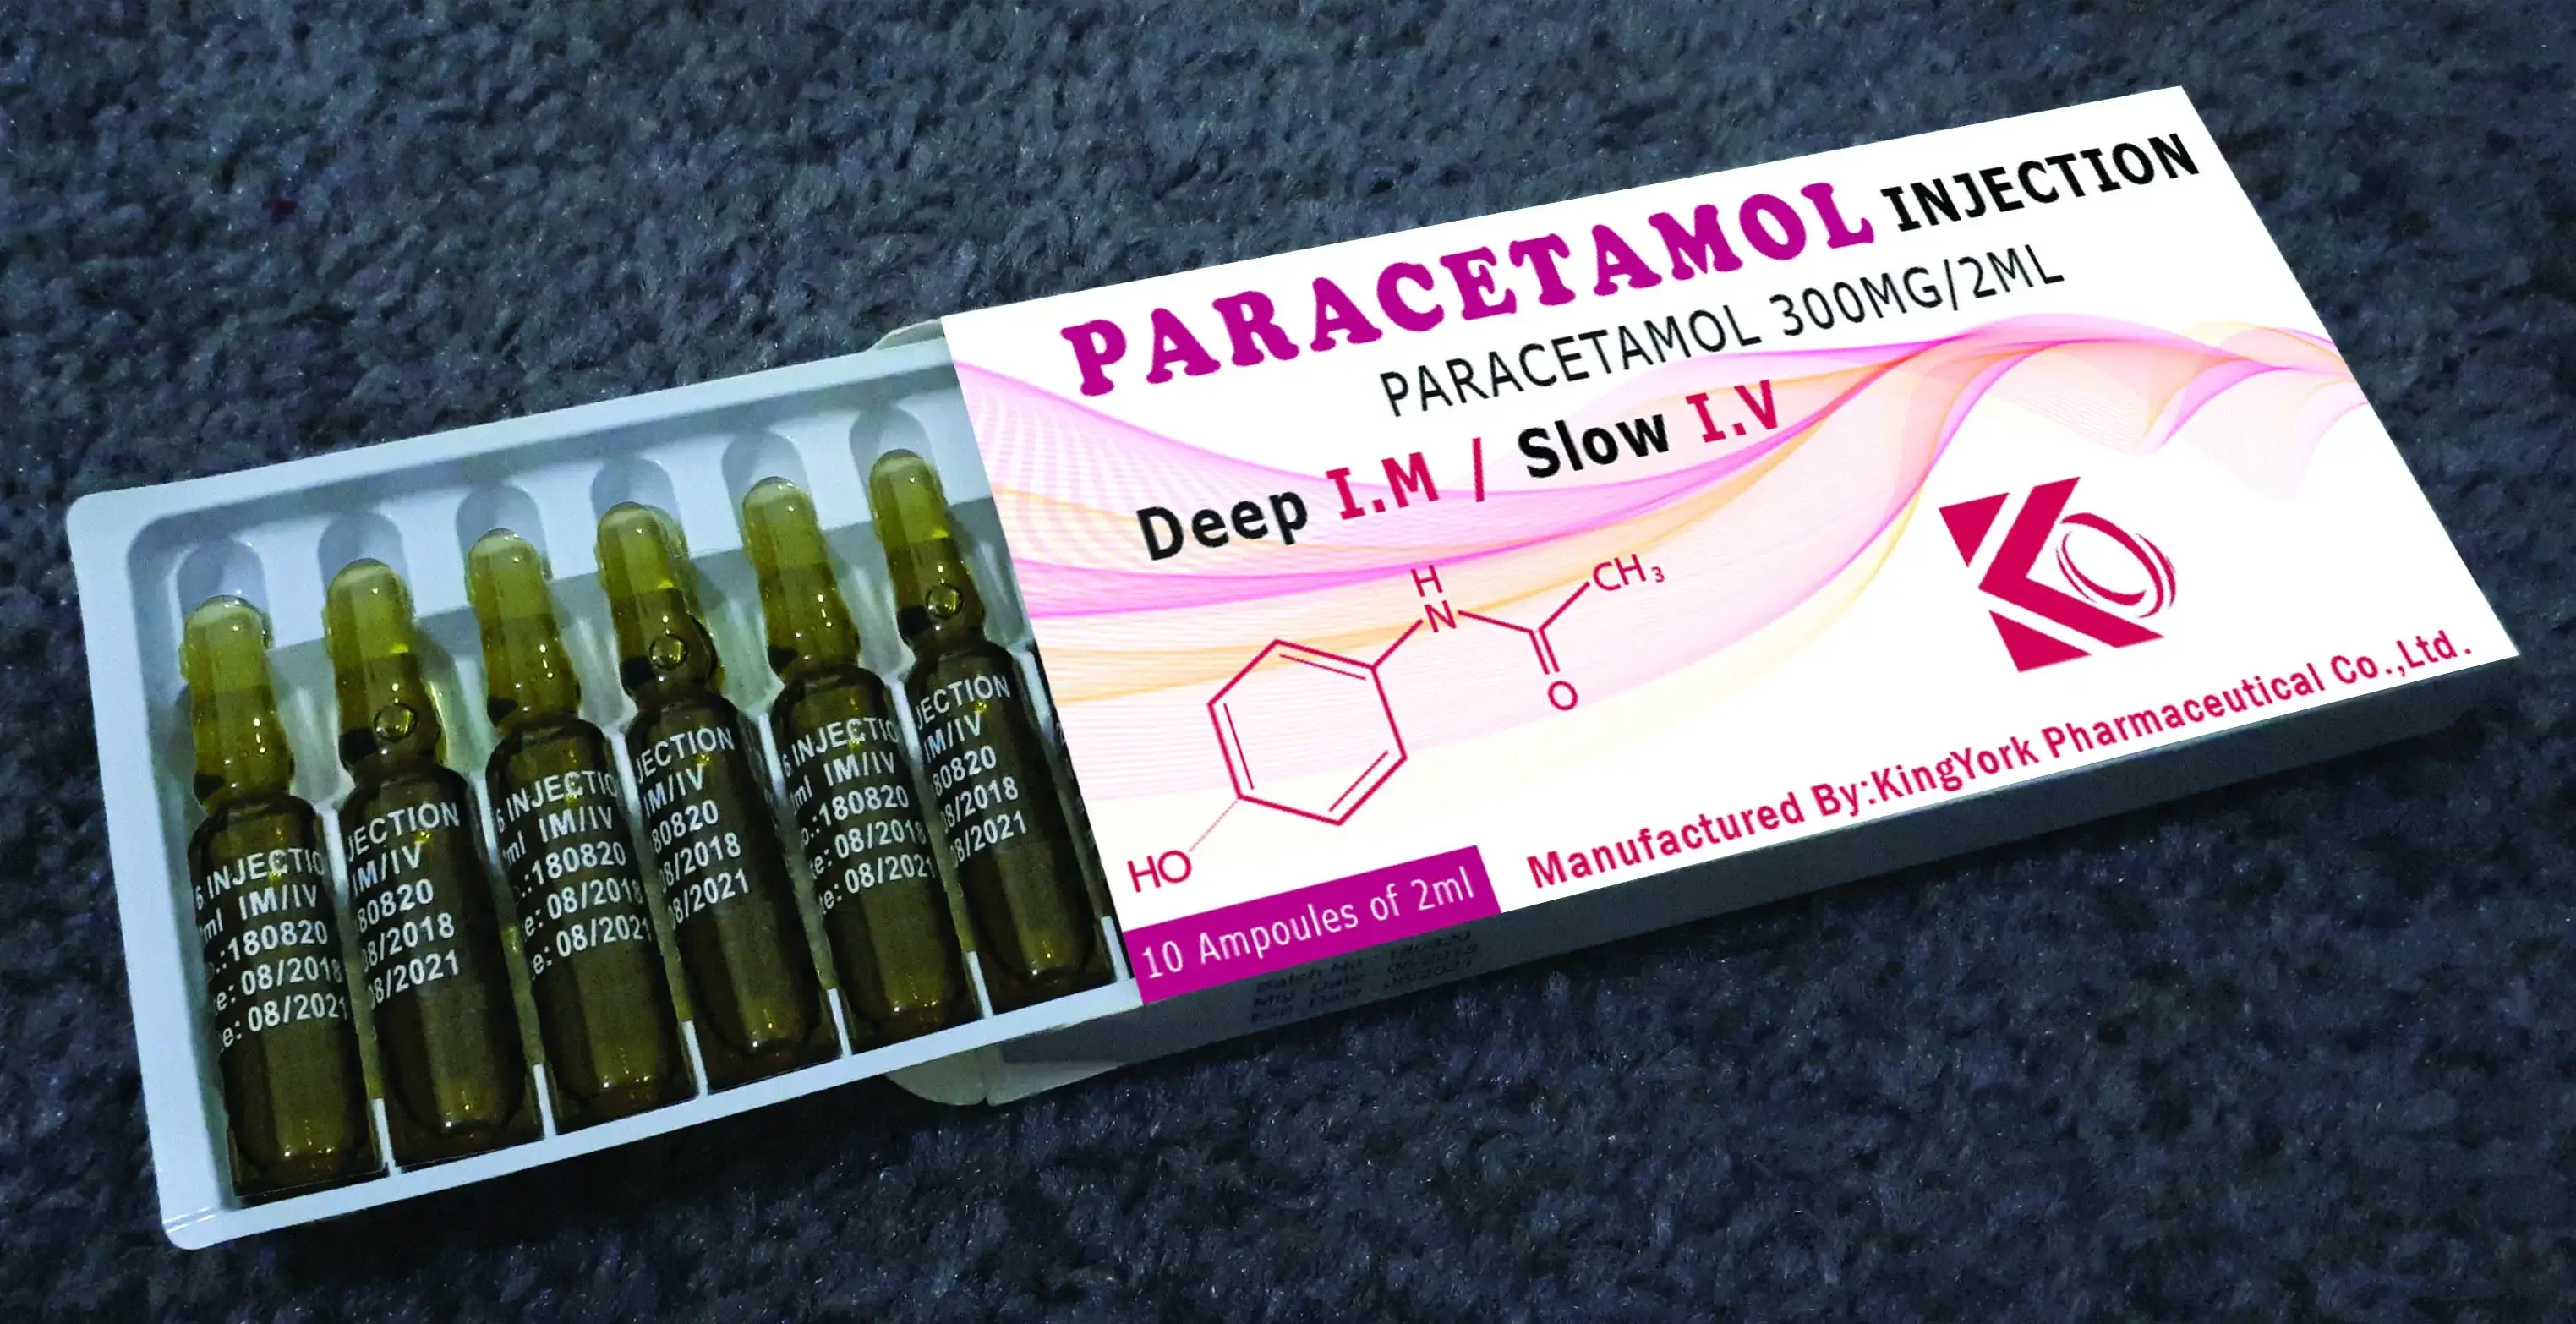 'paracetamol Injection', 'paracetamol ampoules', 'paracetamol 300mg Injection', 'paracetamol 300mg ampoules'